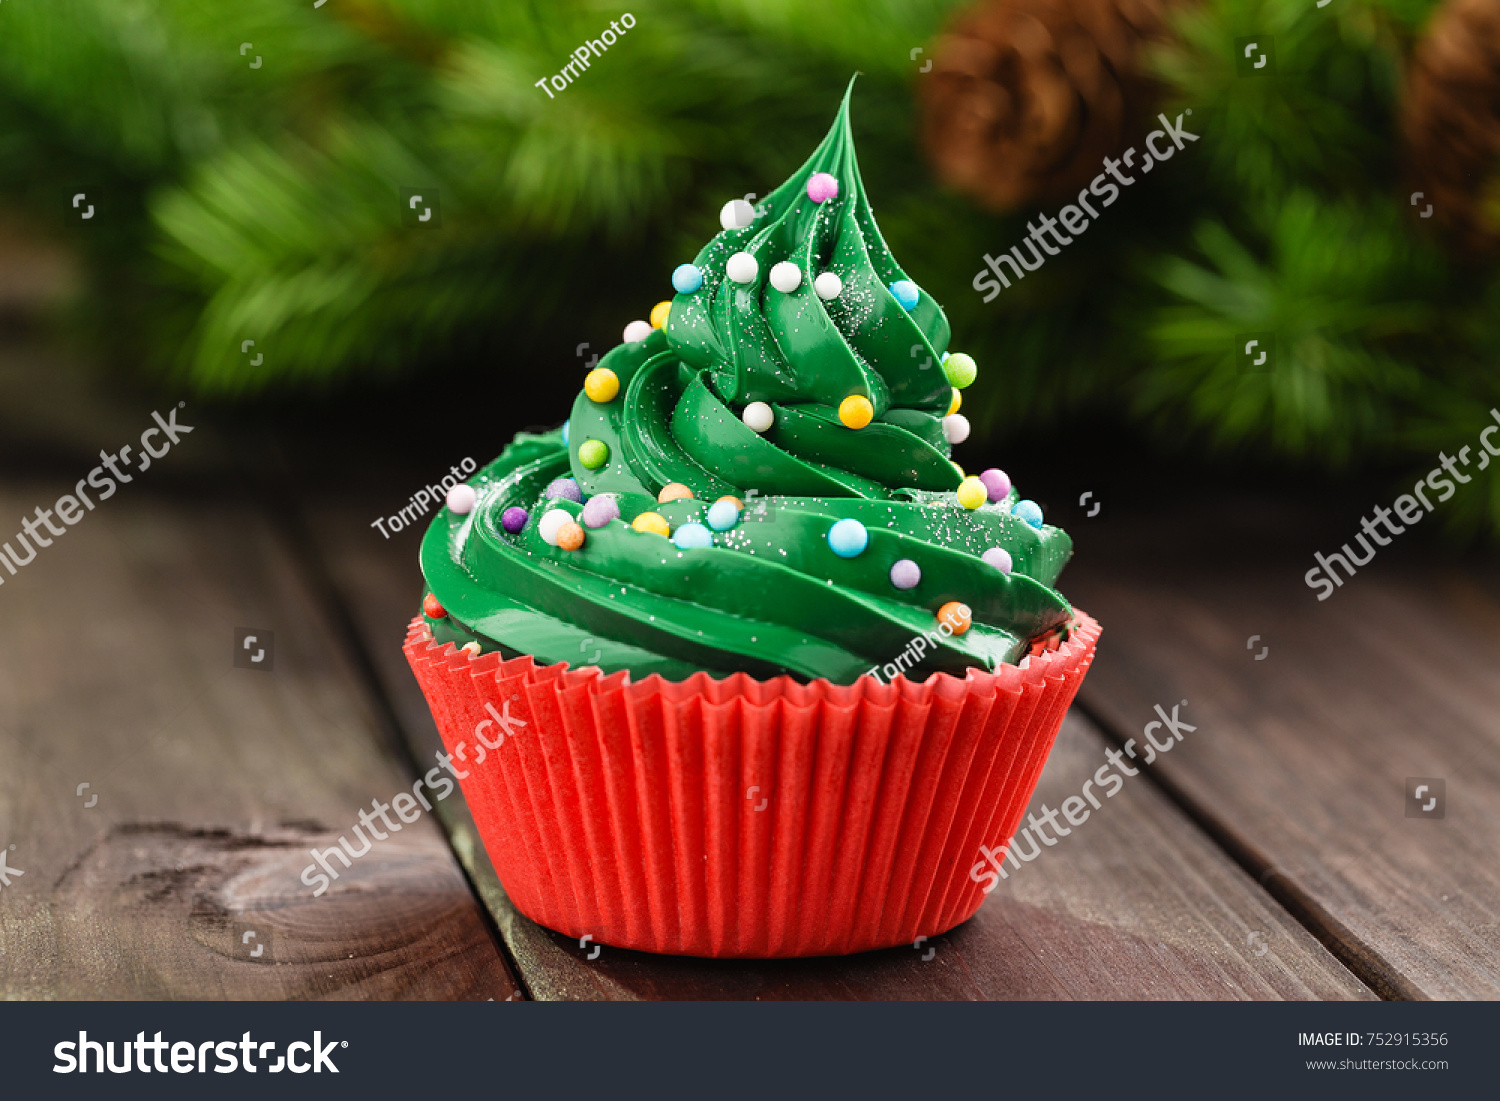 Christmas green cupcake